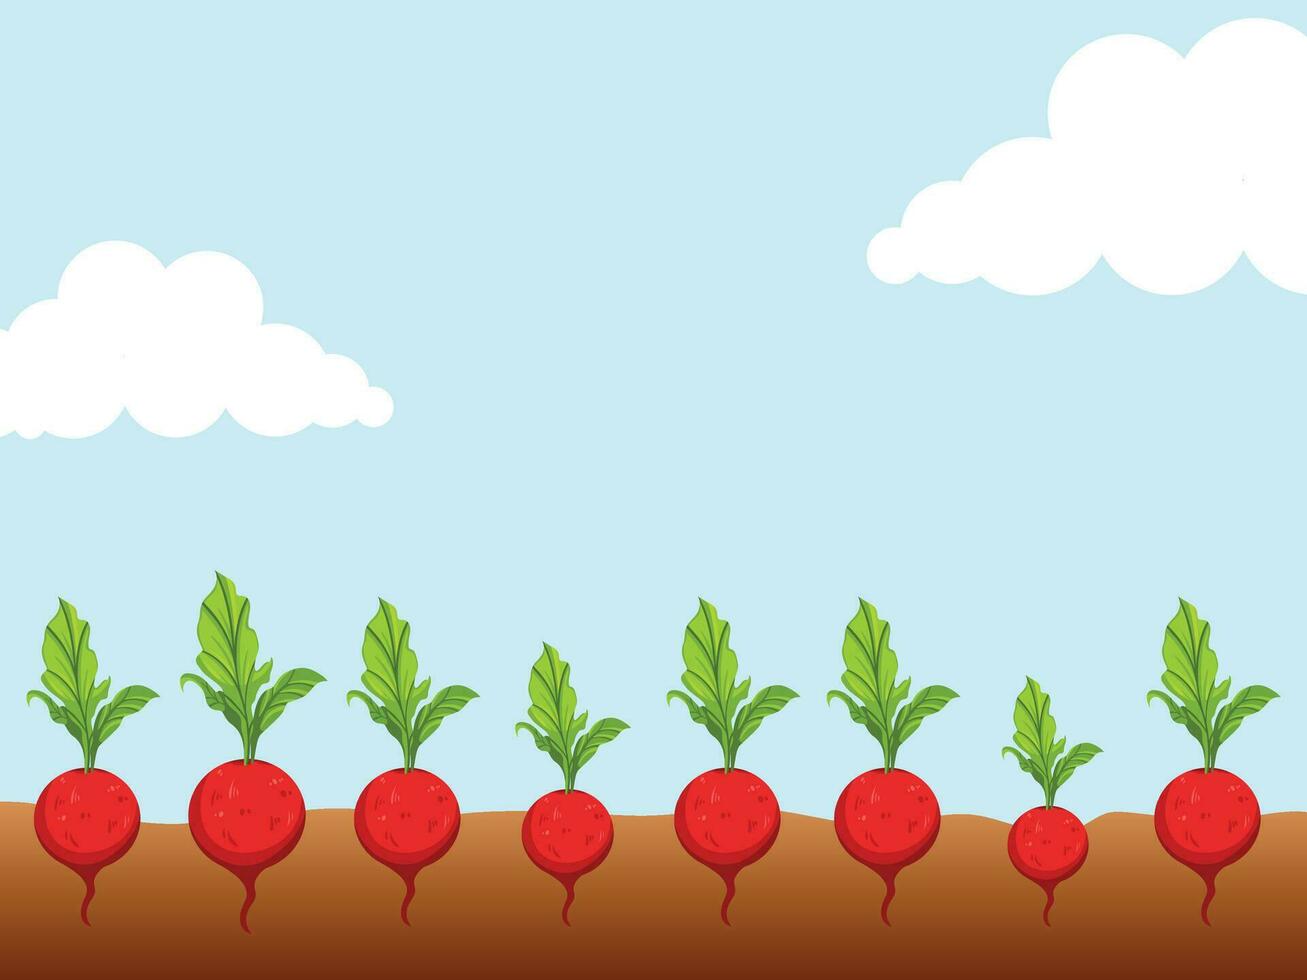 rot runden Radieschen mit Grün Blätter Ernte Bauernhof Reihe gepflanzt auf Boden Boden Vektor Illustration isoliert auf Blau Himmel und Wolken horizontal Landschaft Hintergrund. einfach eben Karikatur Kunst Stil.